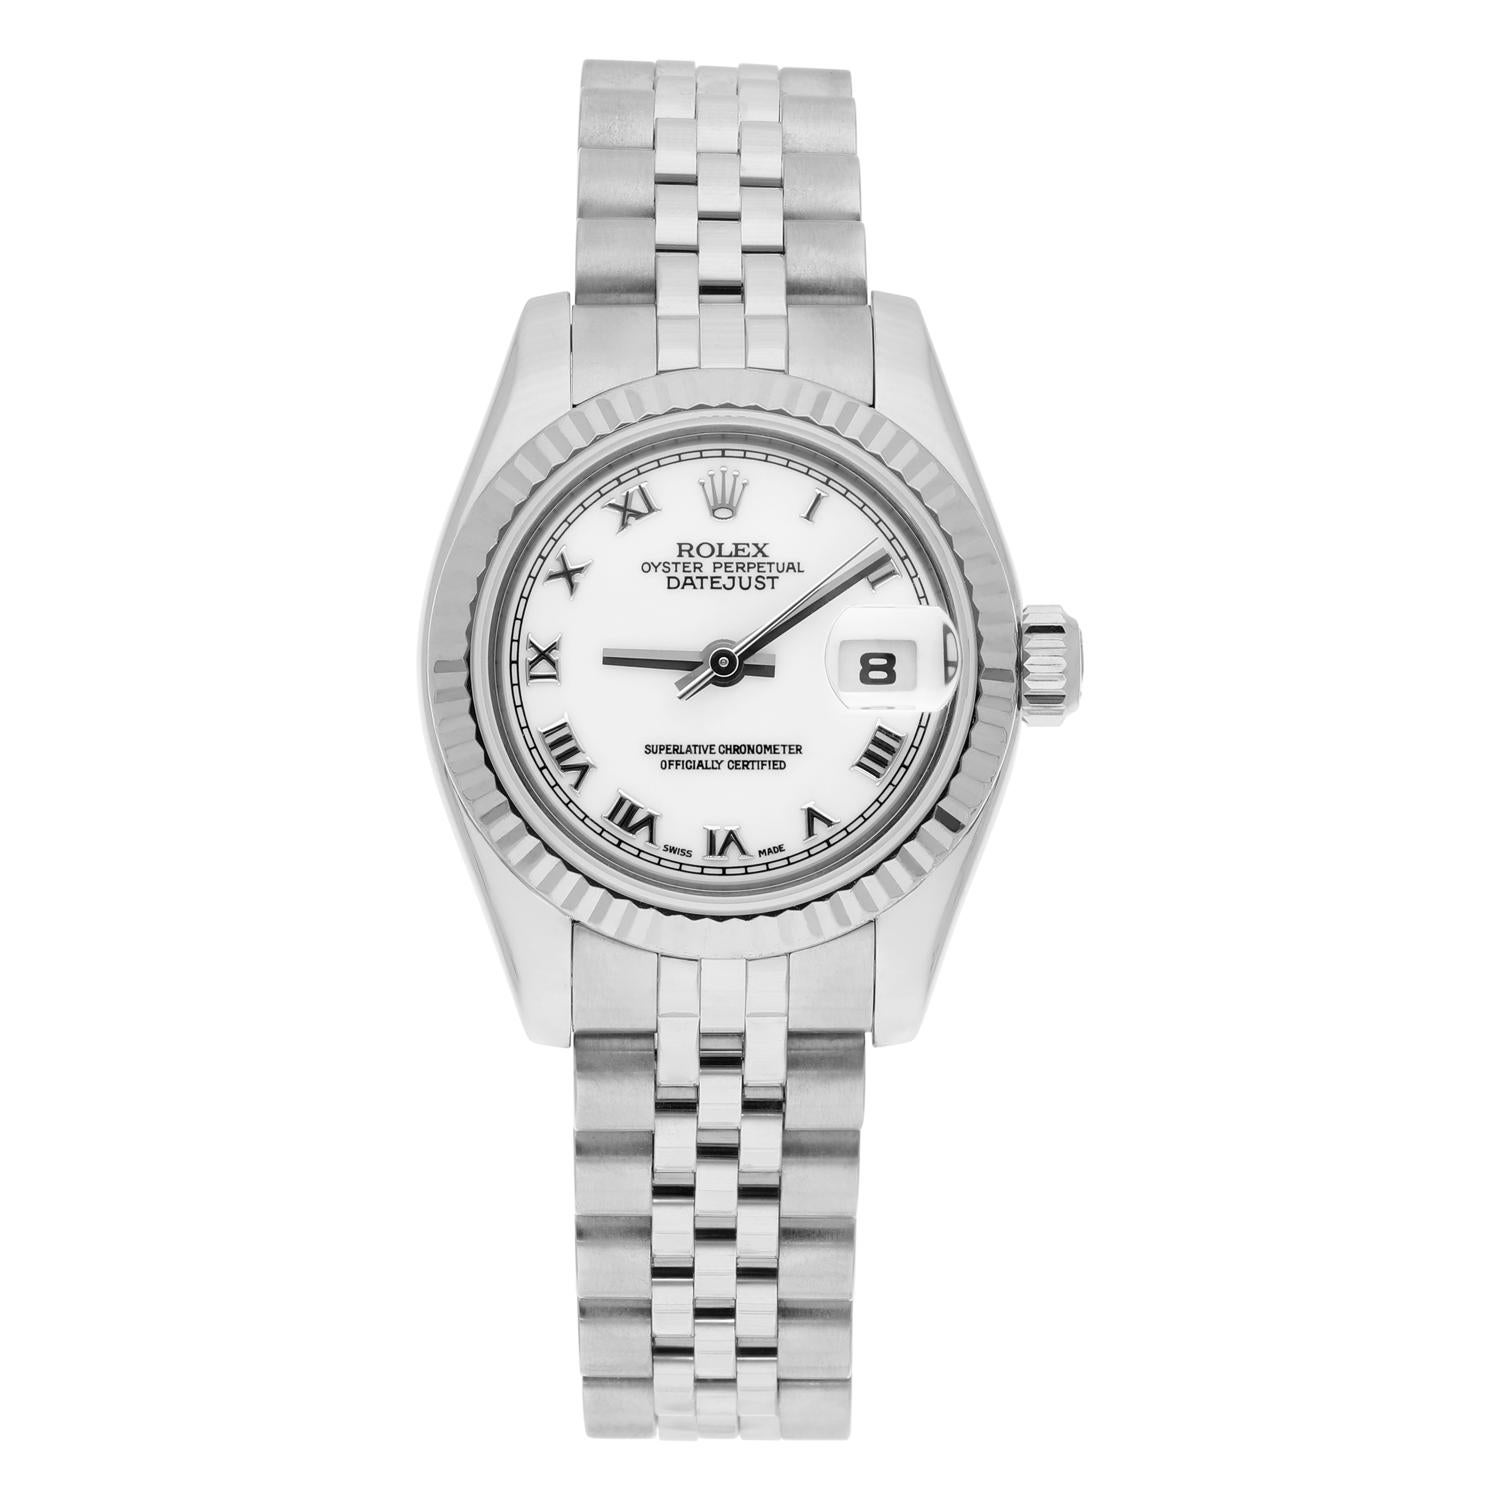 Te presentamos el impresionante reloj de pulsera Rolex Lady-Datejust 179174, una pieza atemporal que destila lujo y sofisticación. Este reloj de fabricación suiza tiene una caja redonda de 26 mm de acero inoxidable y un bisel estriado de oro blanco.